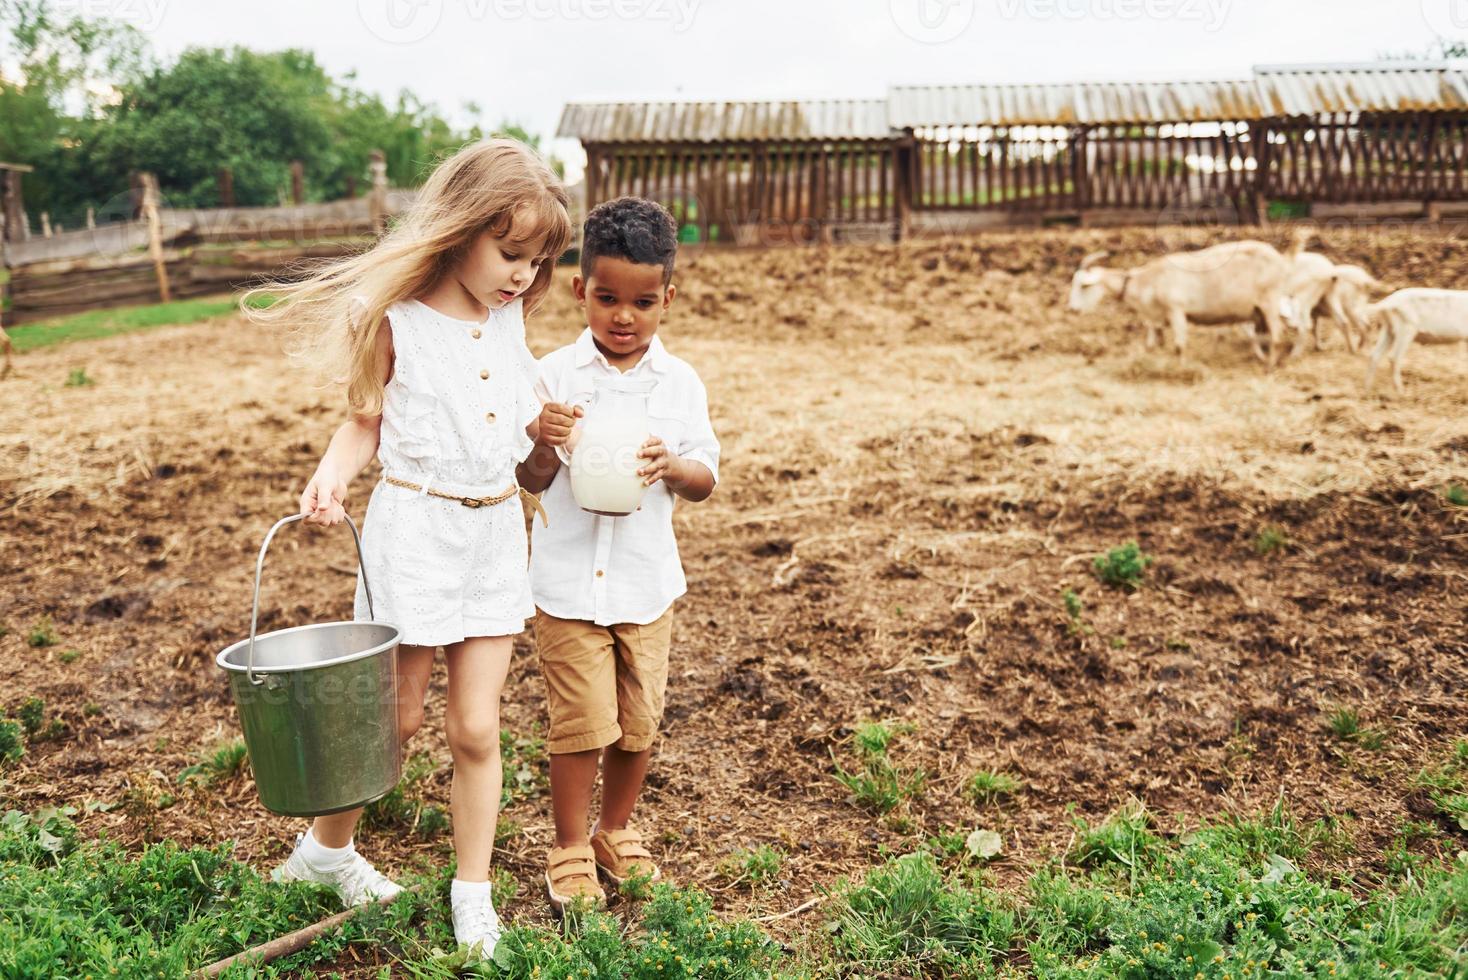 segurando o leite. menino afro-americano bonitinho com garota europeia está na fazenda foto